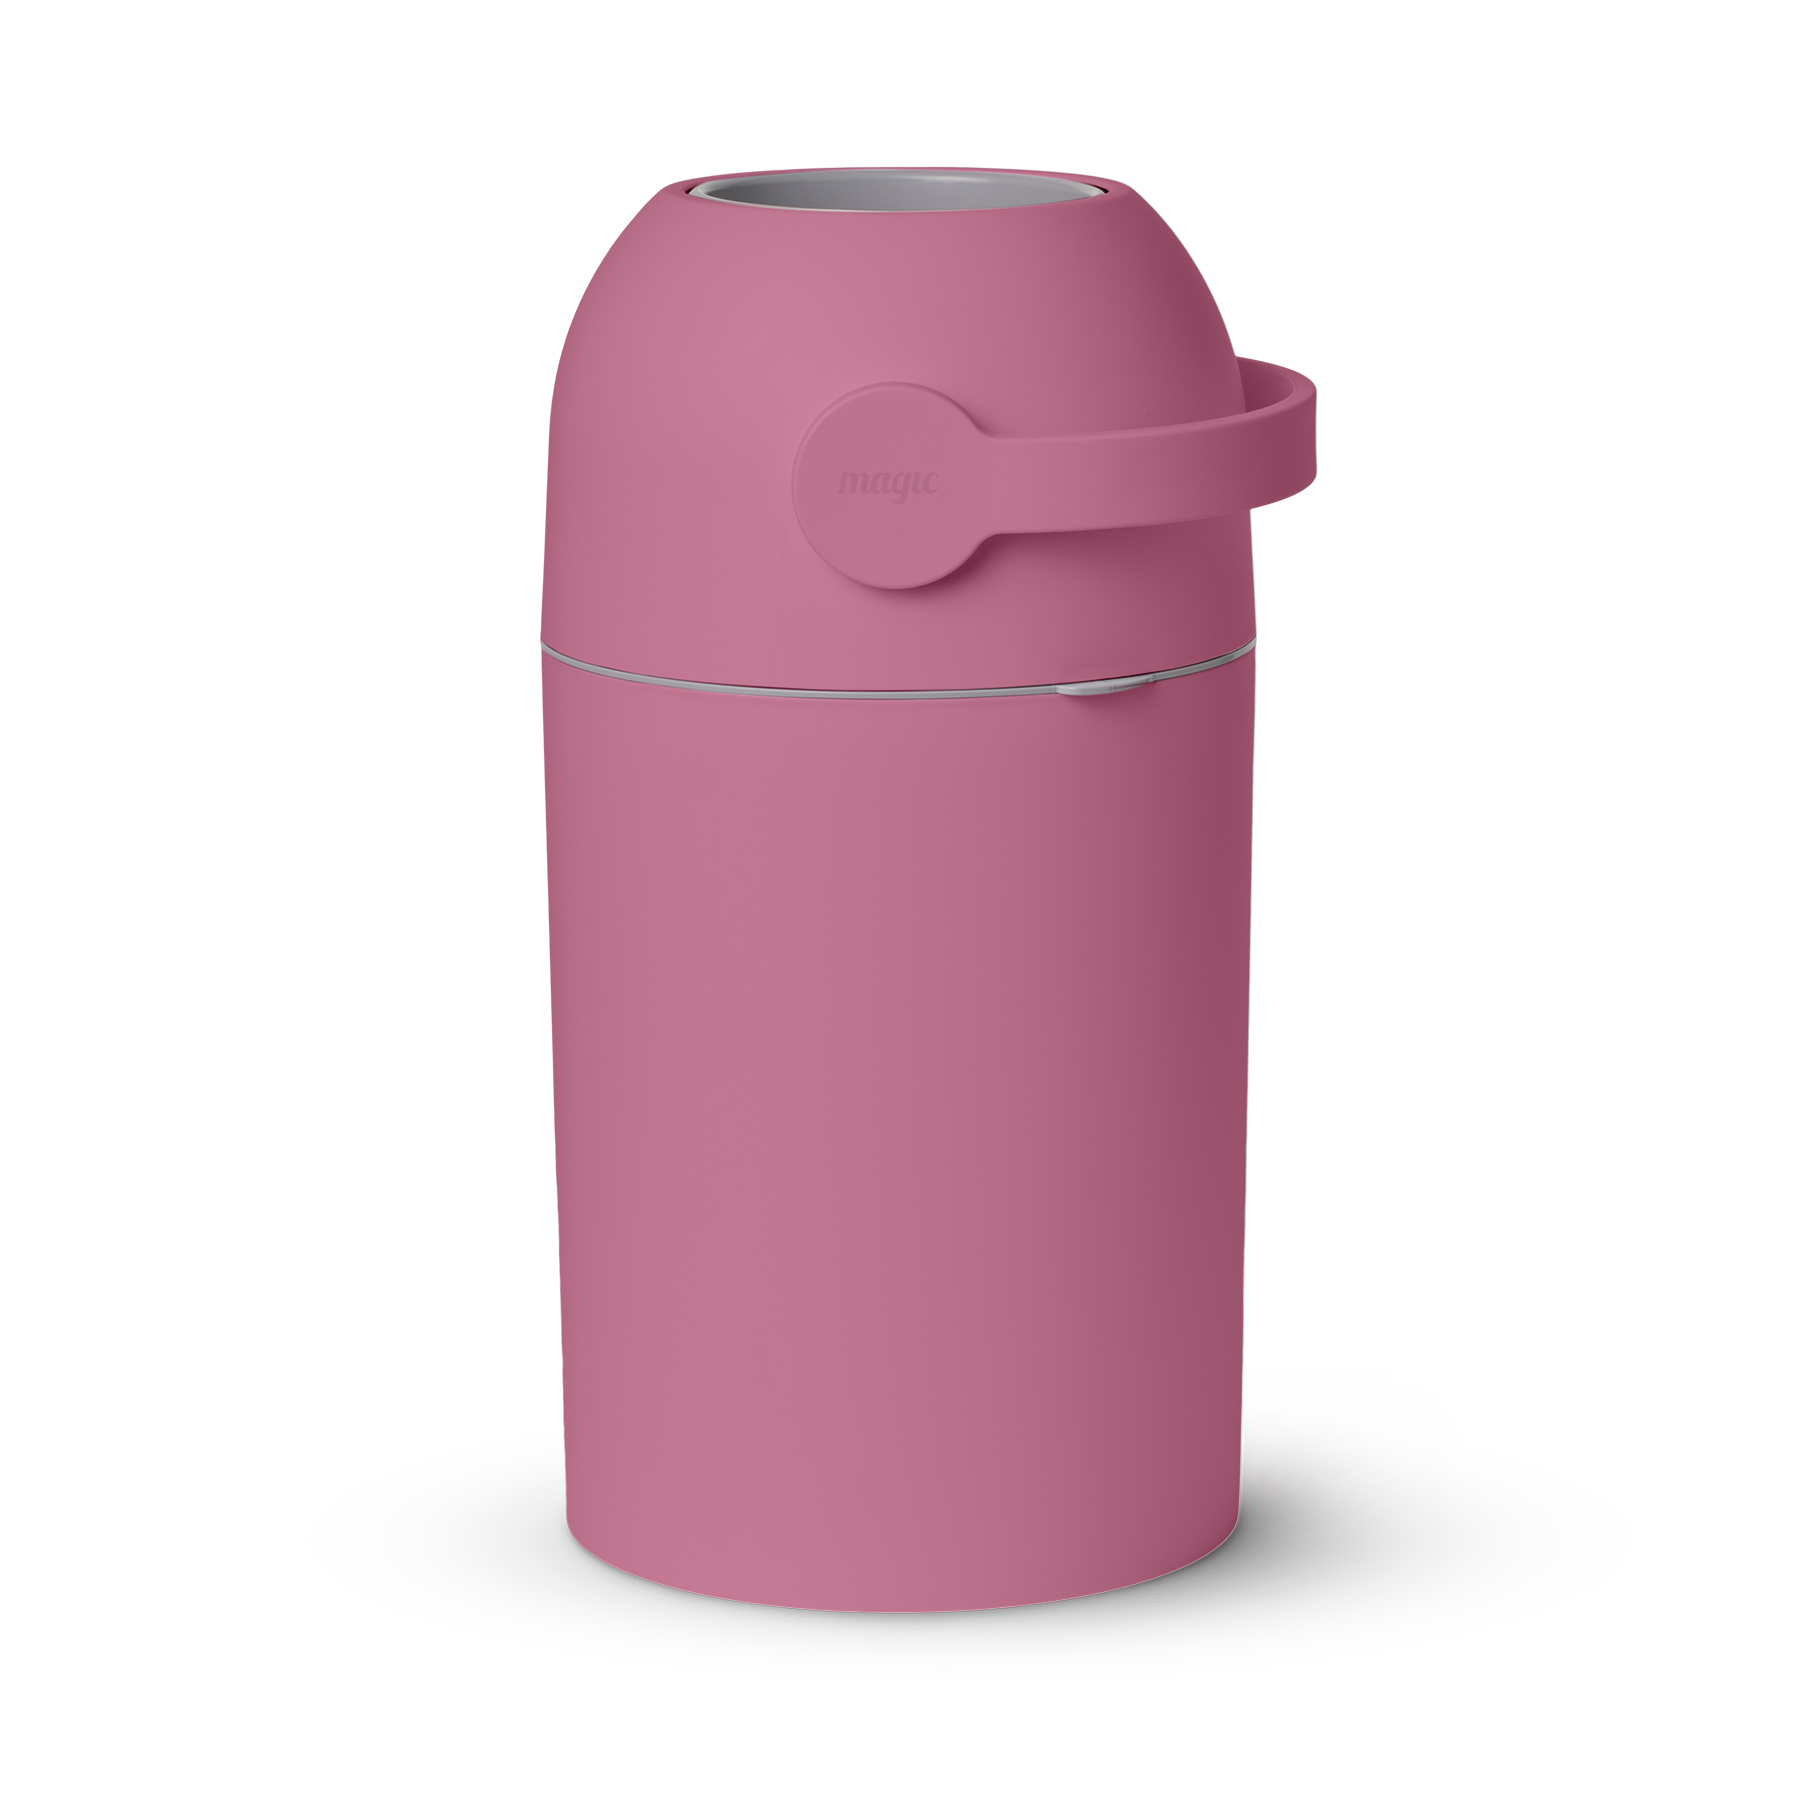 Накопитель подгузников Magic Diaper pail Majestic, Candy Pink накопитель подгузников magic diaper pail majestic bright white